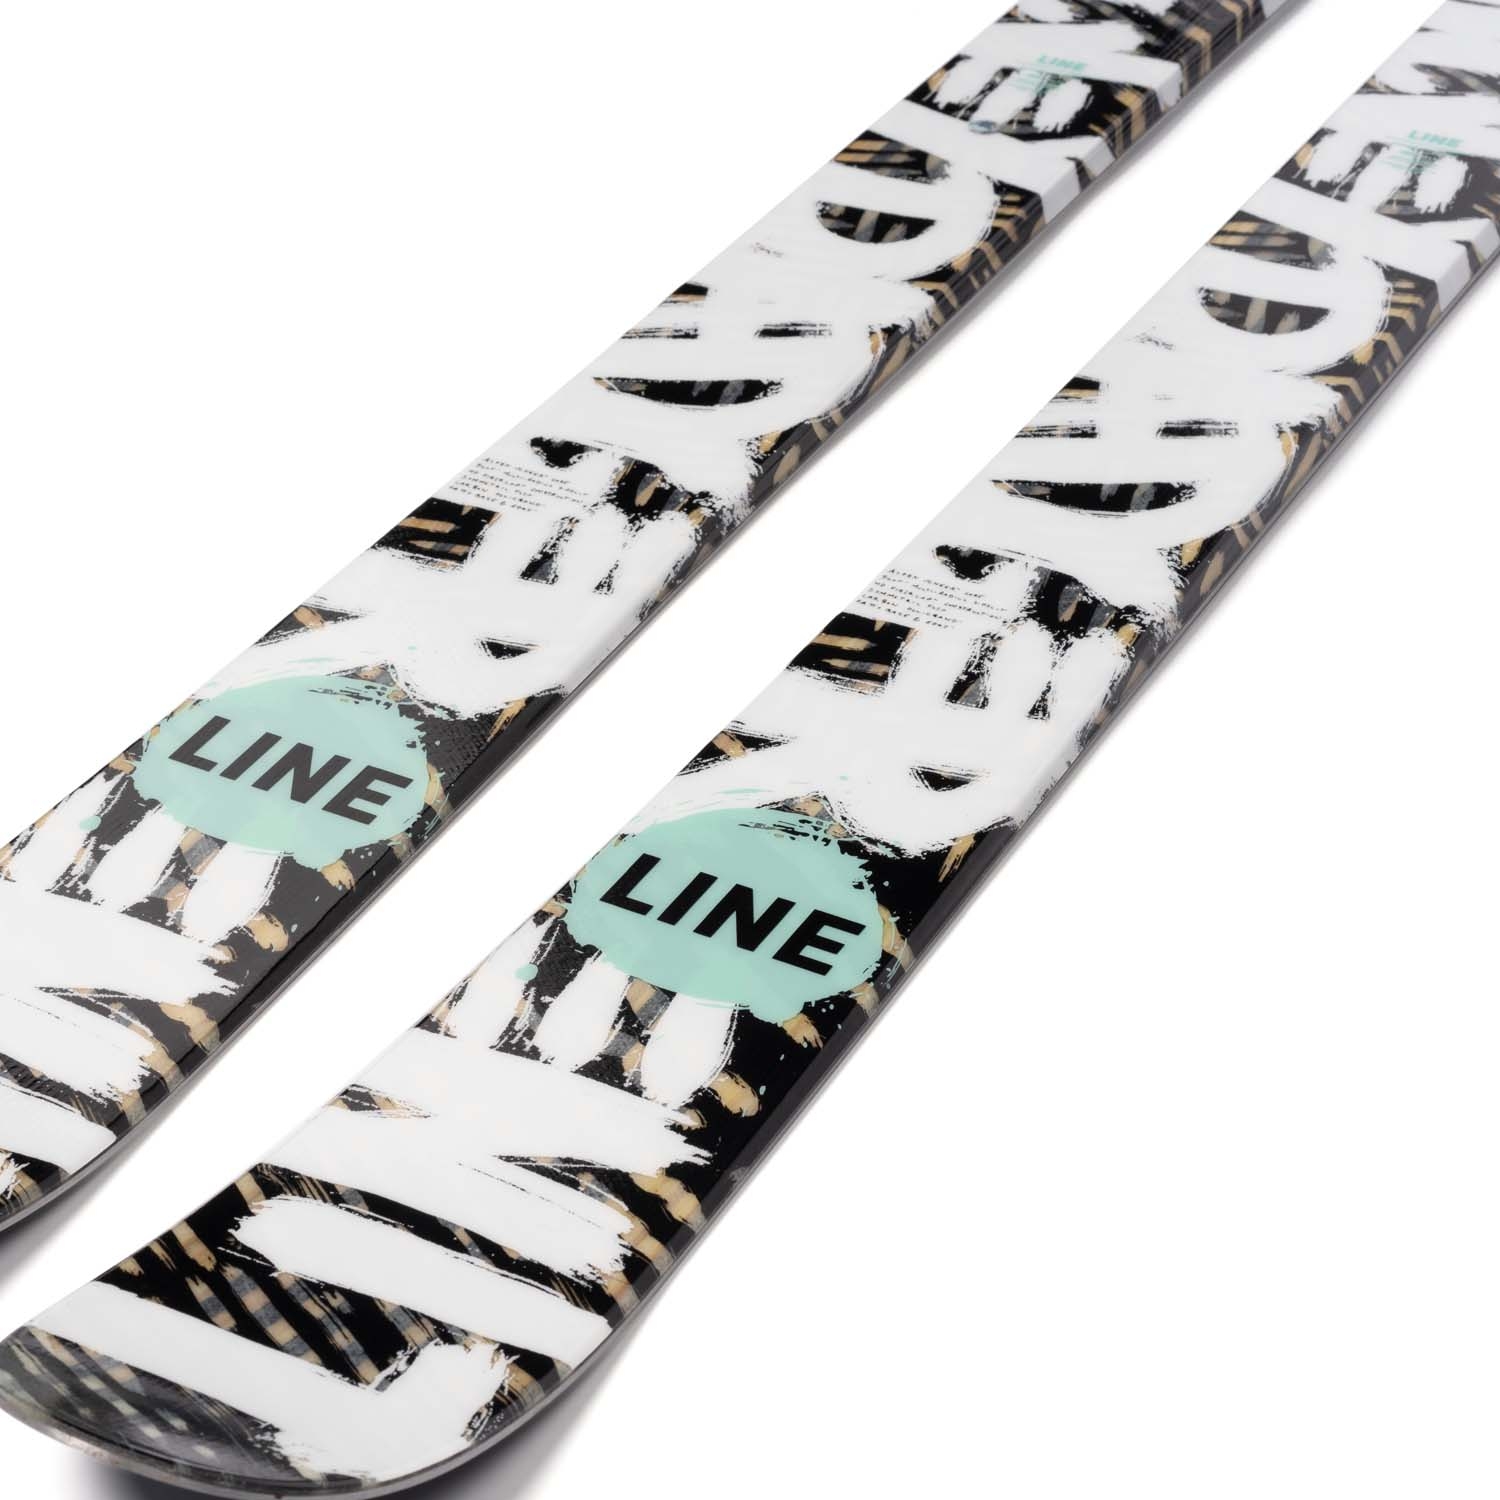 Line Honey Badger Skis 2022